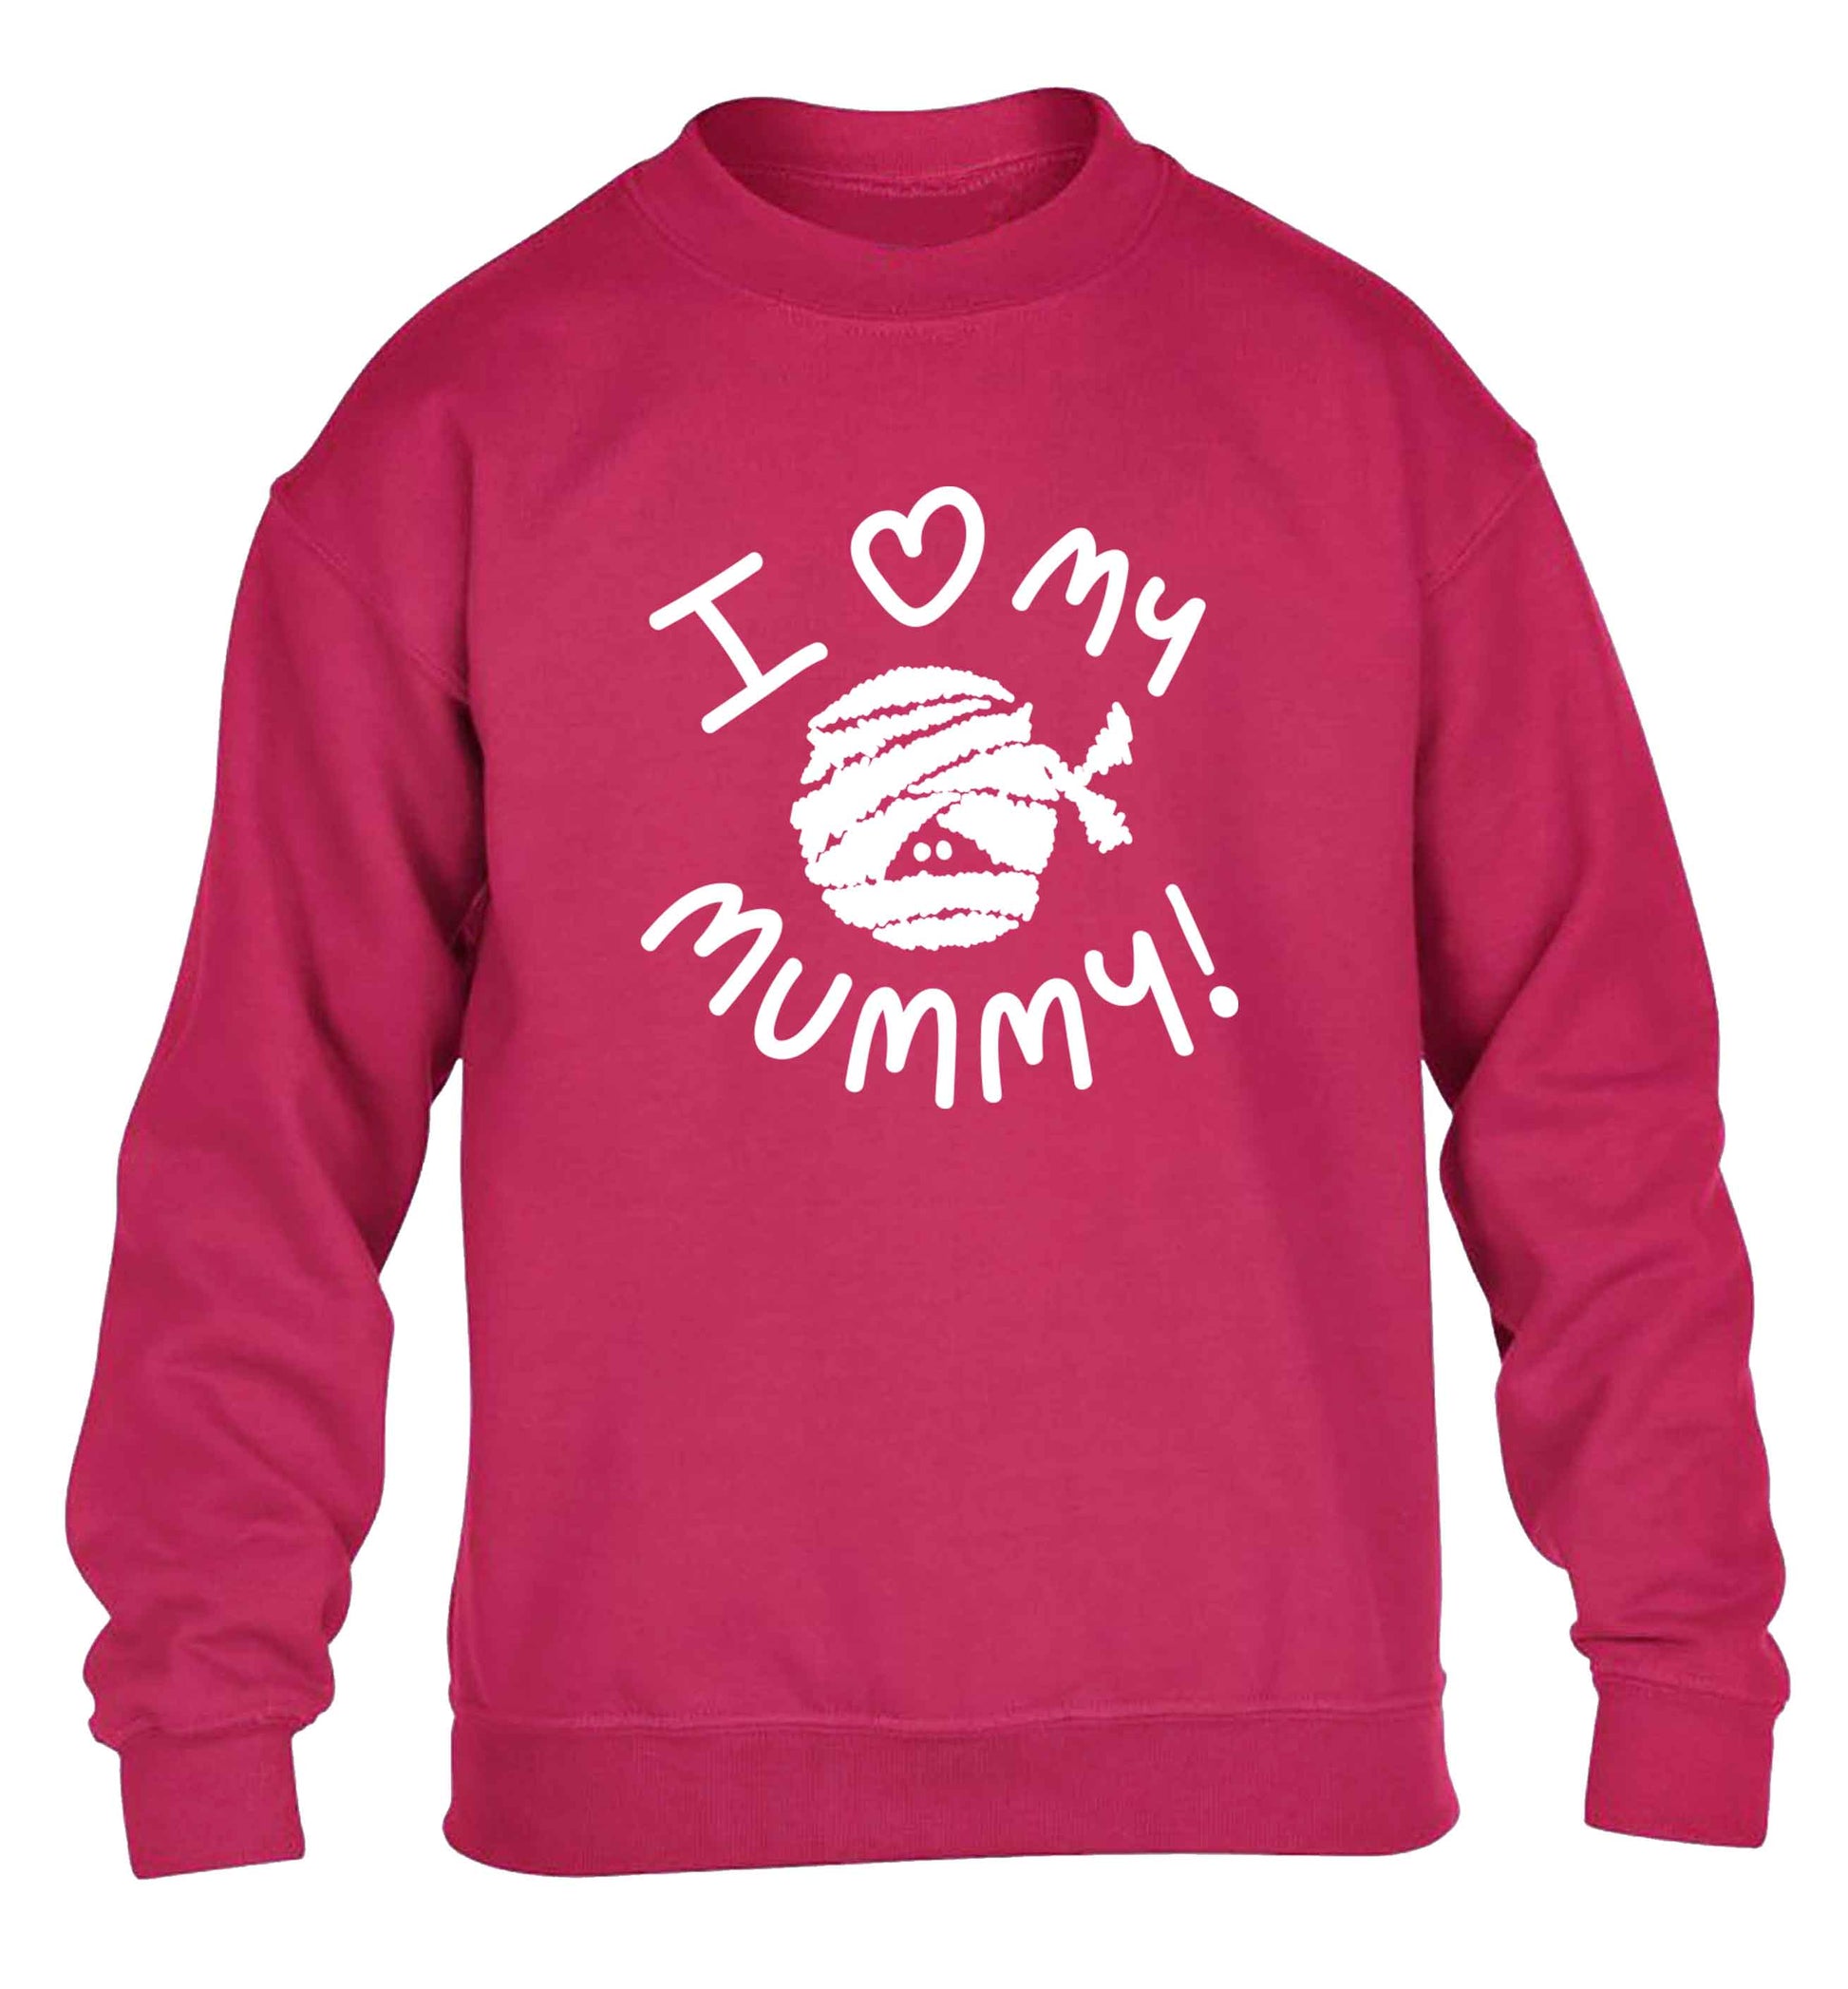 I love my mummy halloween pun children's pink sweater 12-13 Years